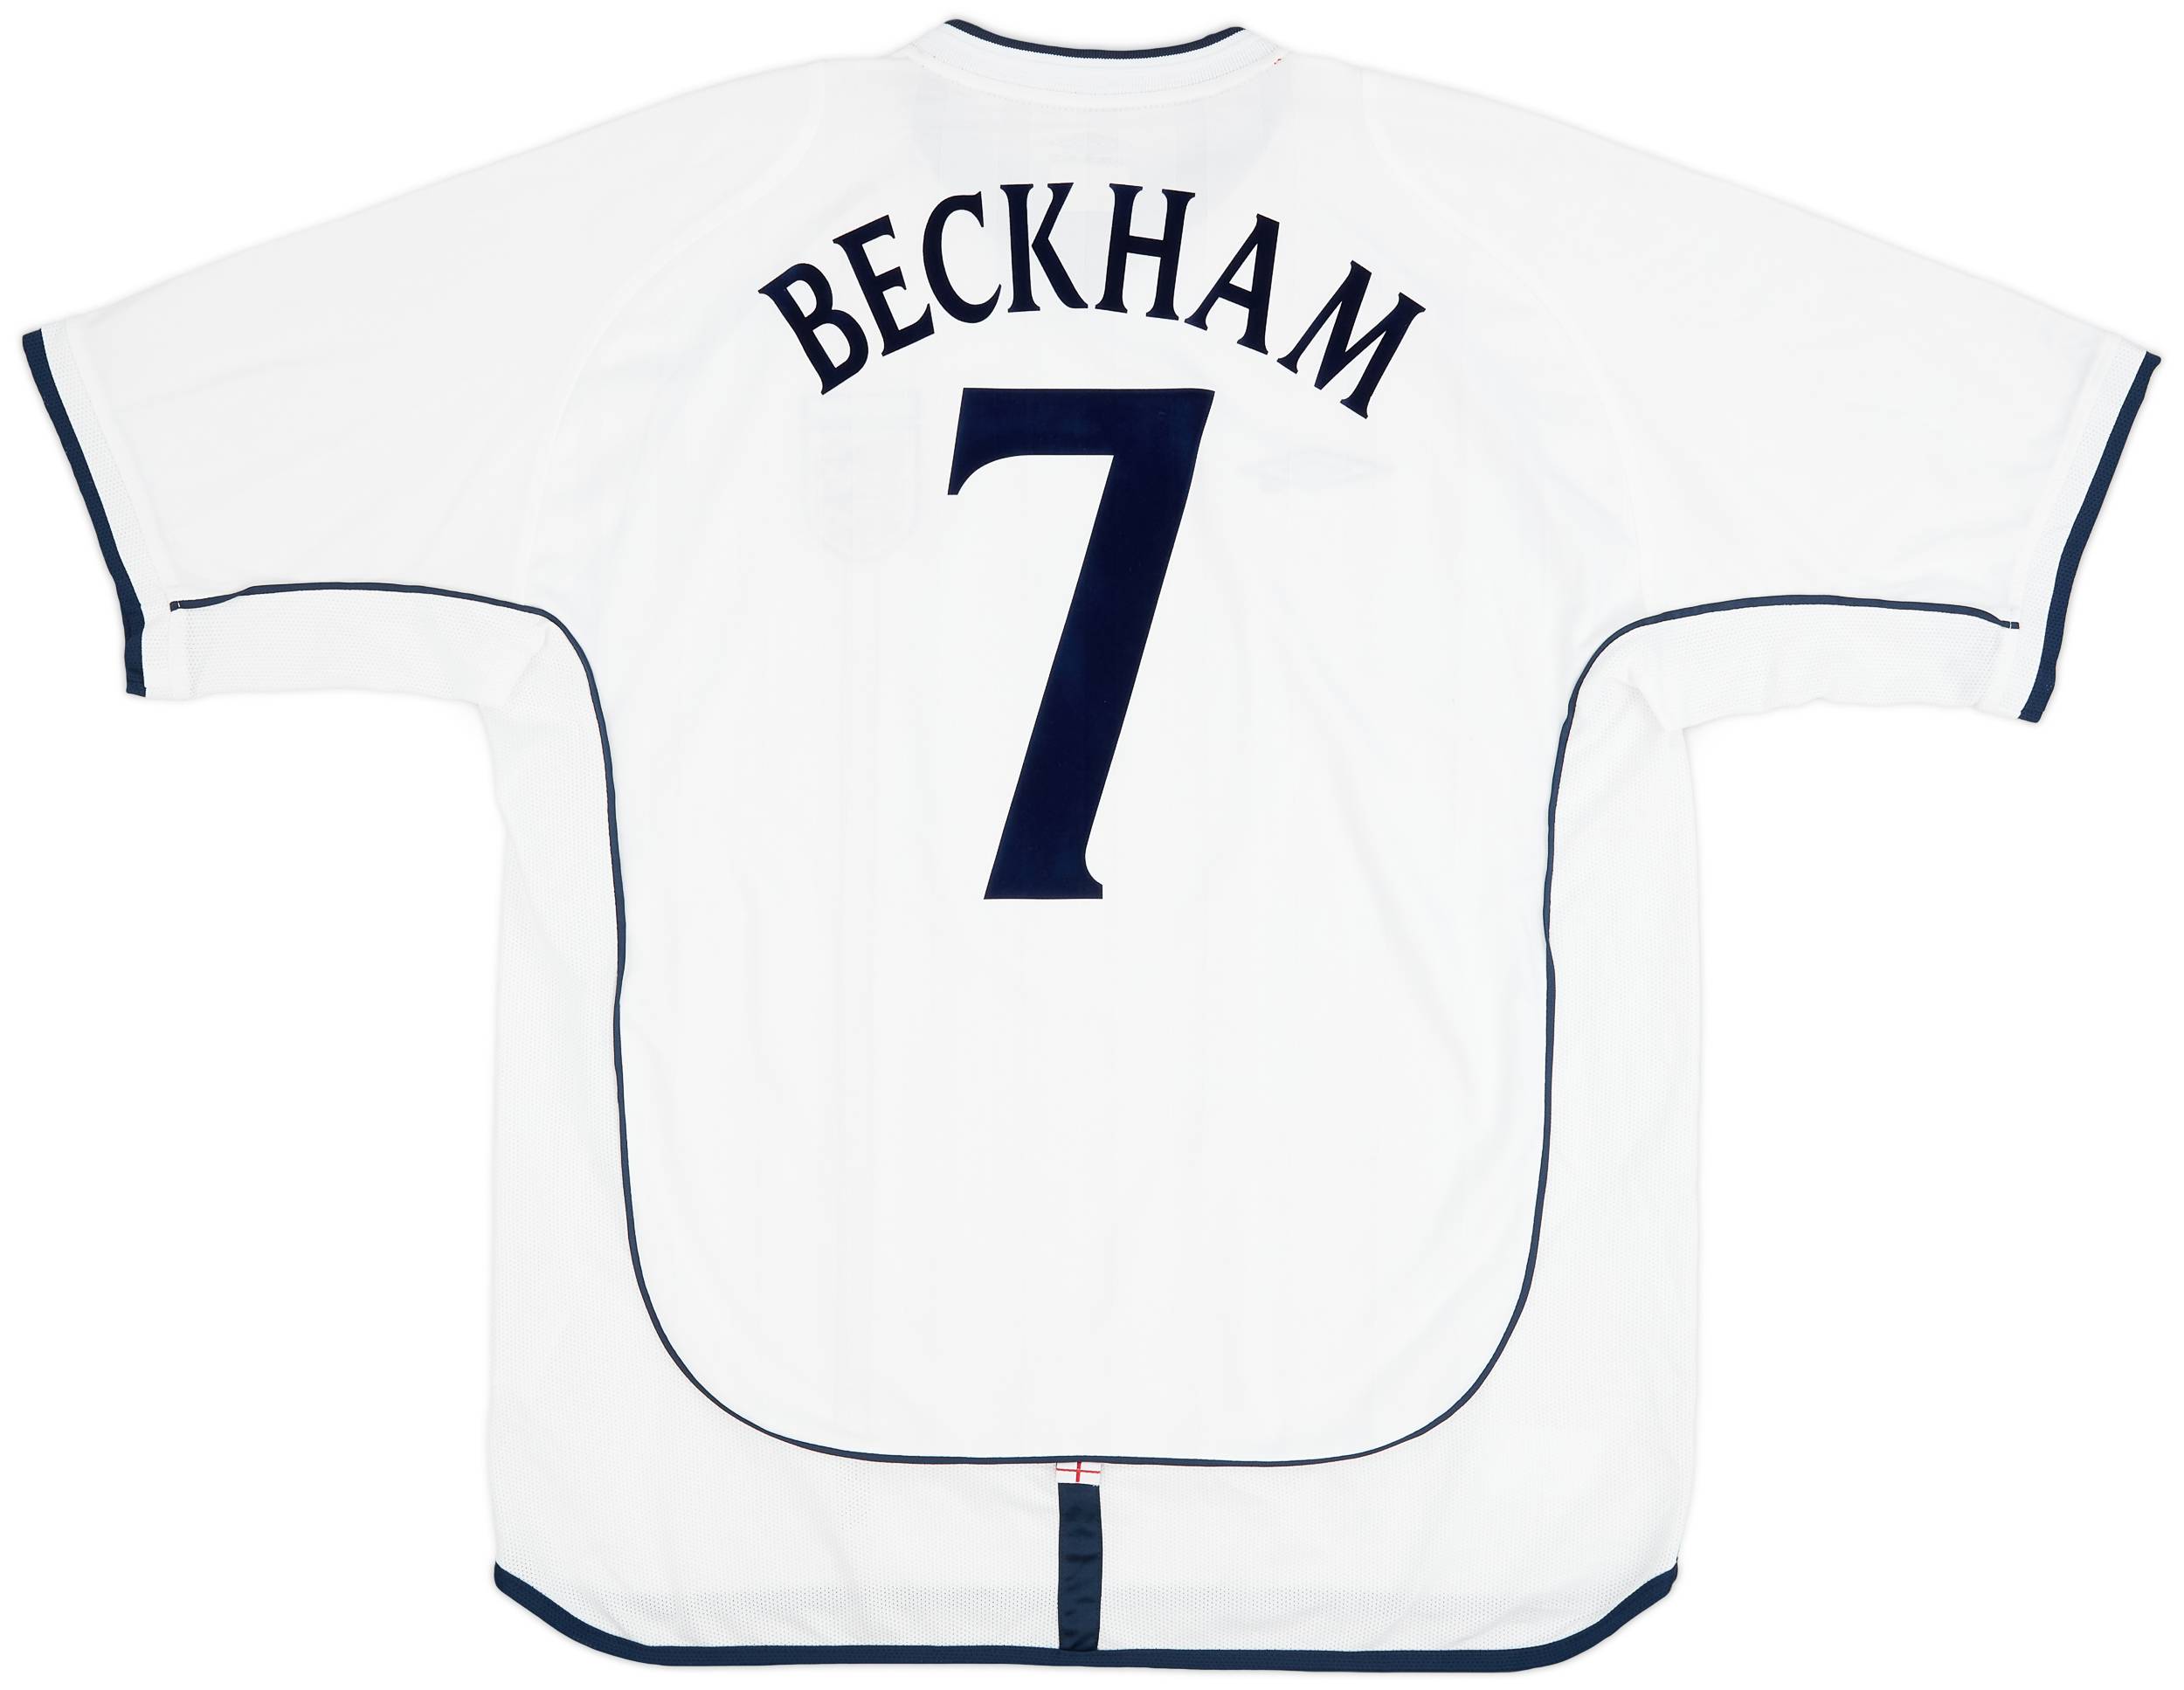 2001-03 England Home Shirt Beckham #7 - 5/10 - (XL)